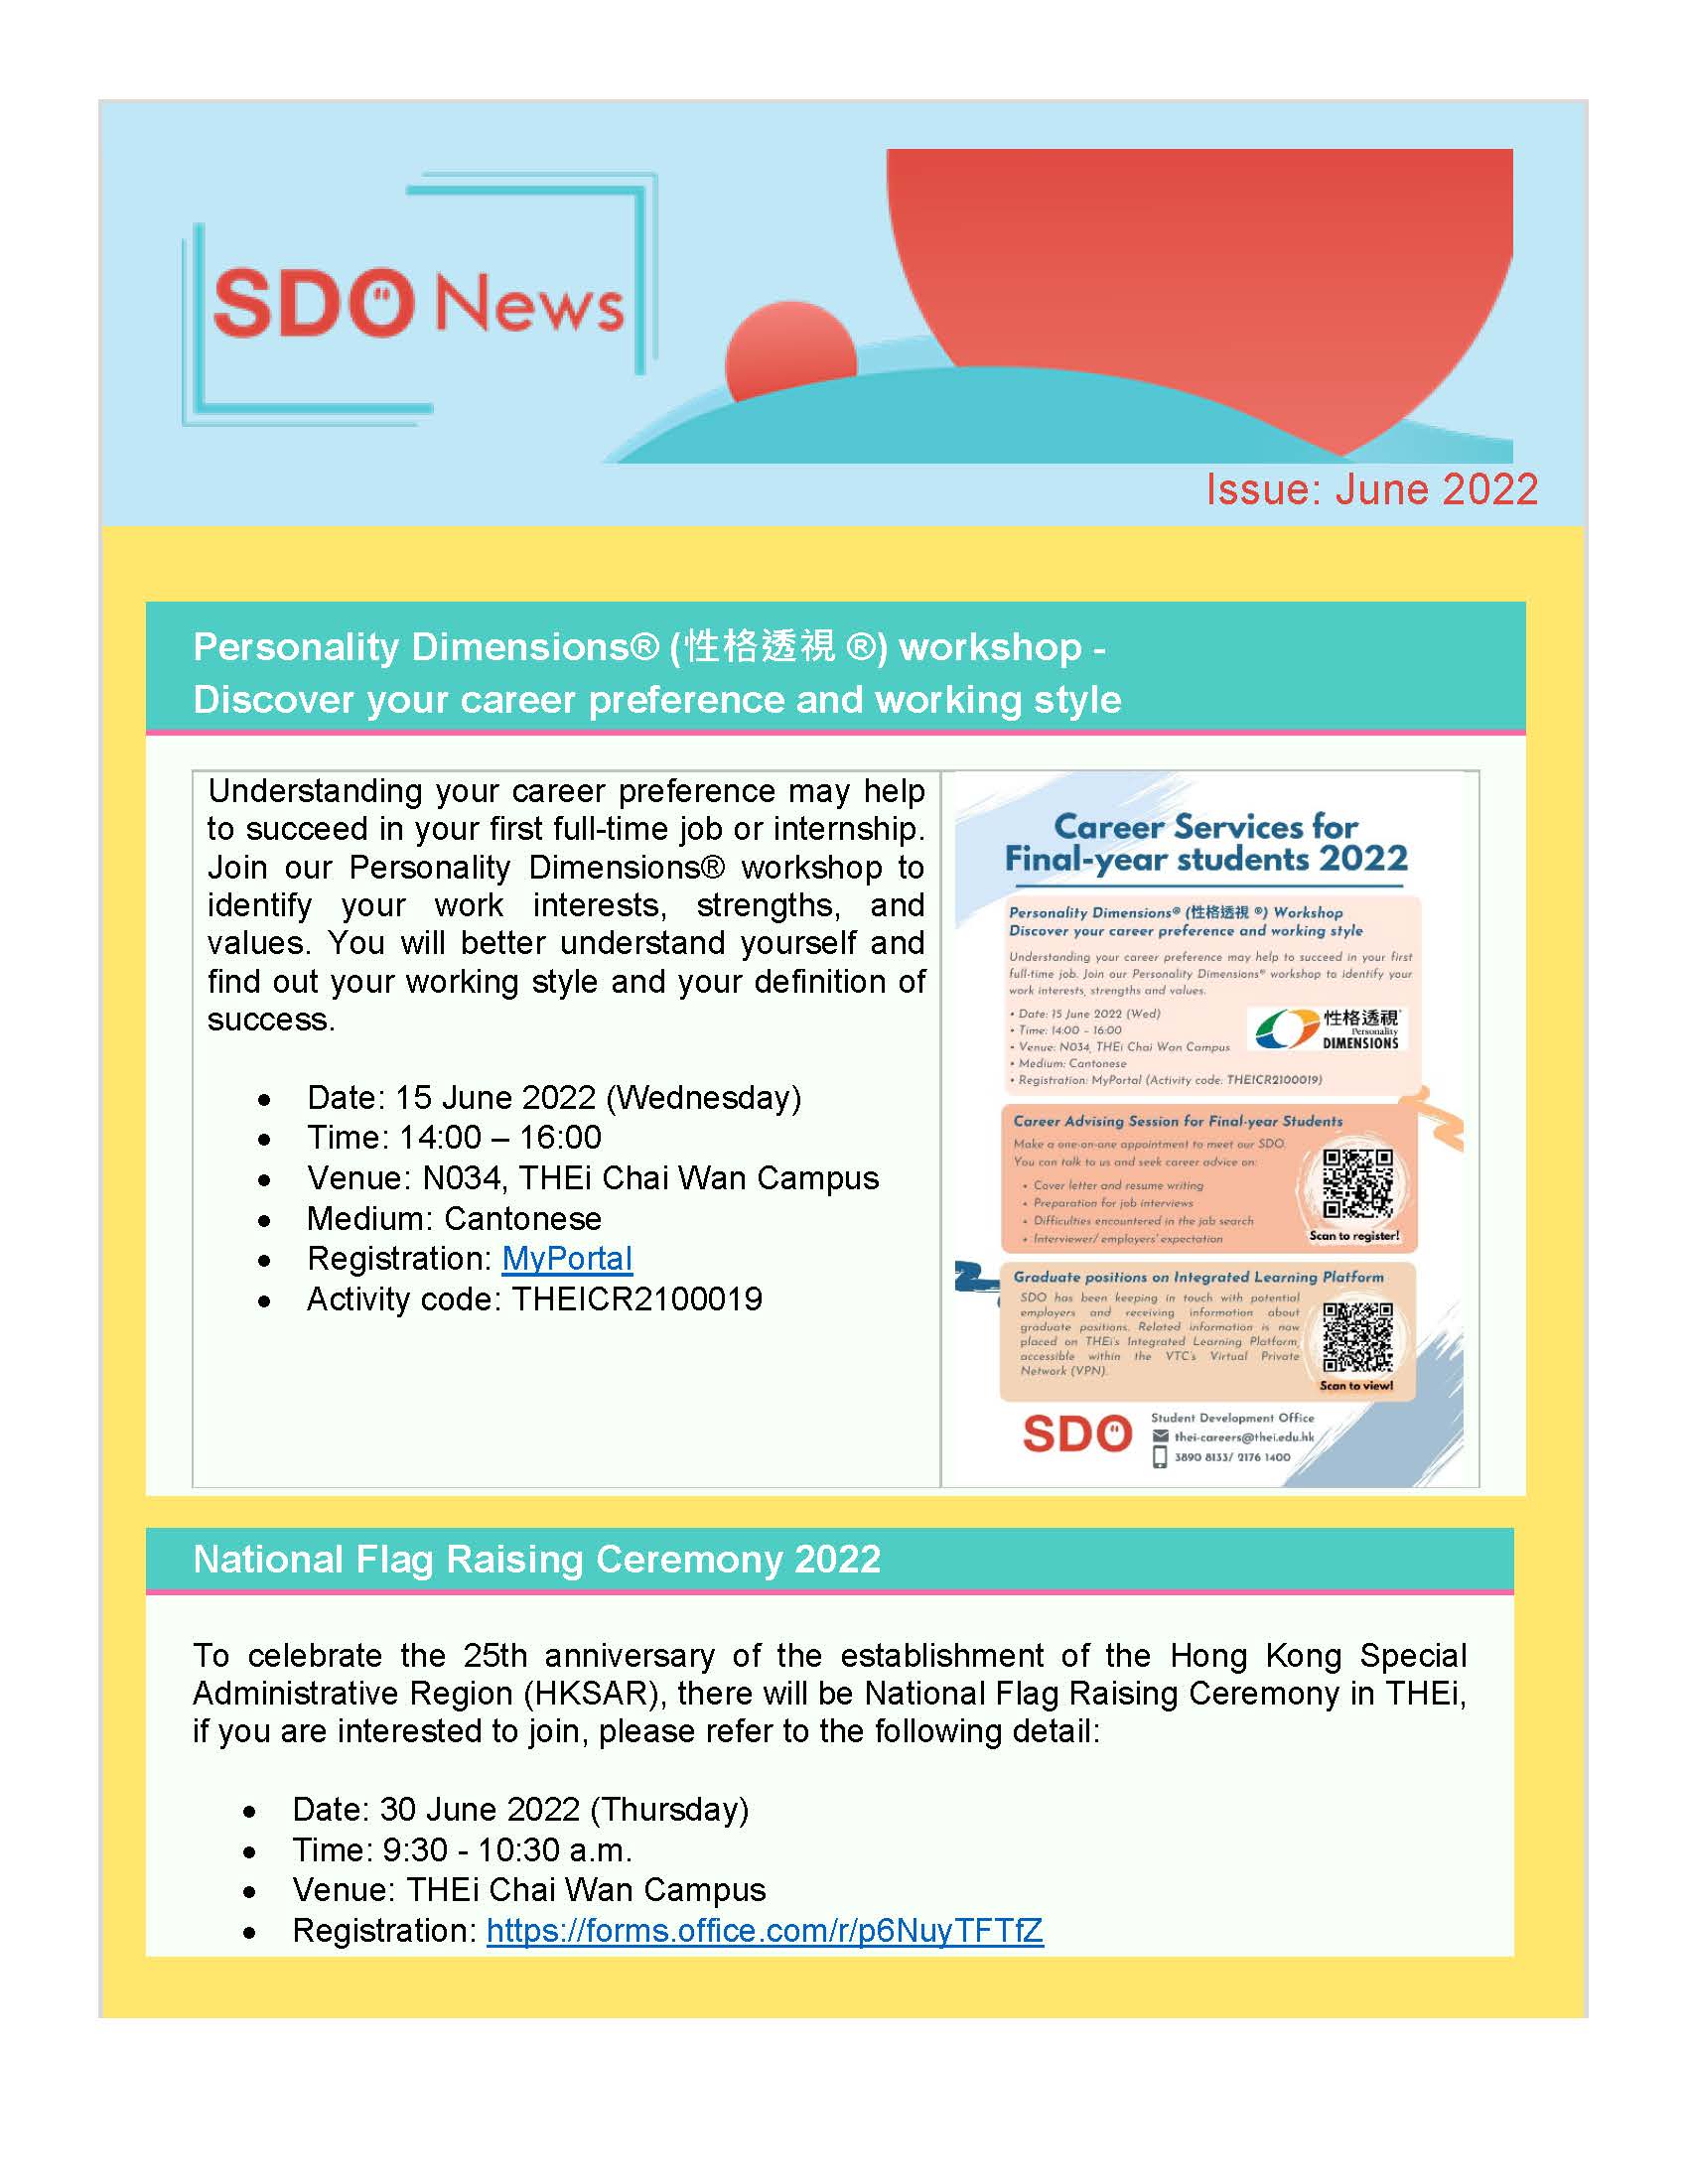 SDO News June 2022